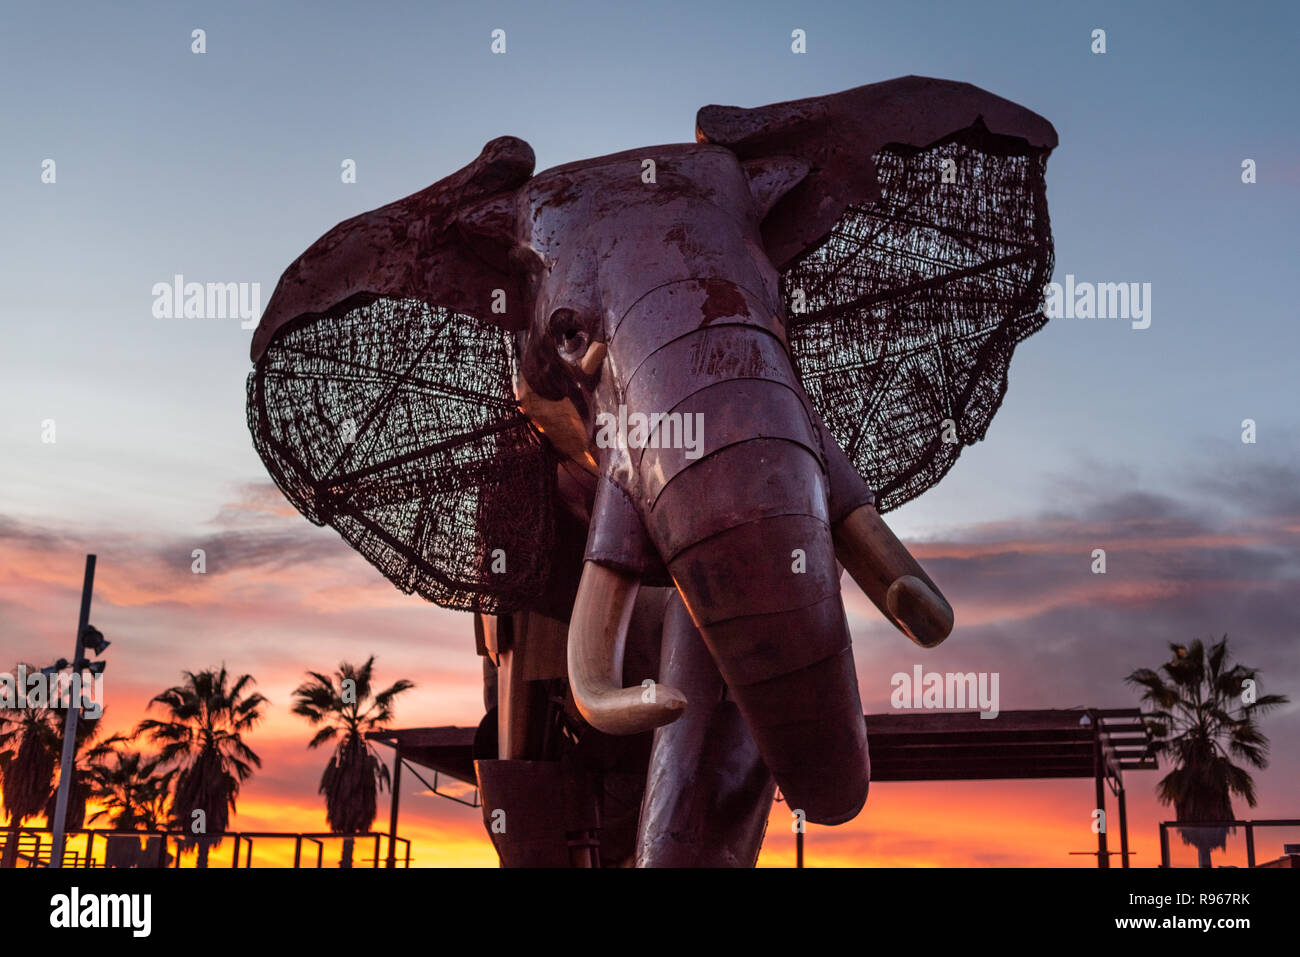 Valencia, Espagne - 15 décembre 2018 : l'éléphant géant en bois et métal à l'entrée du zoo Bioparc à Valence, en Espagne, au moment de la fermeture du zoo Banque D'Images